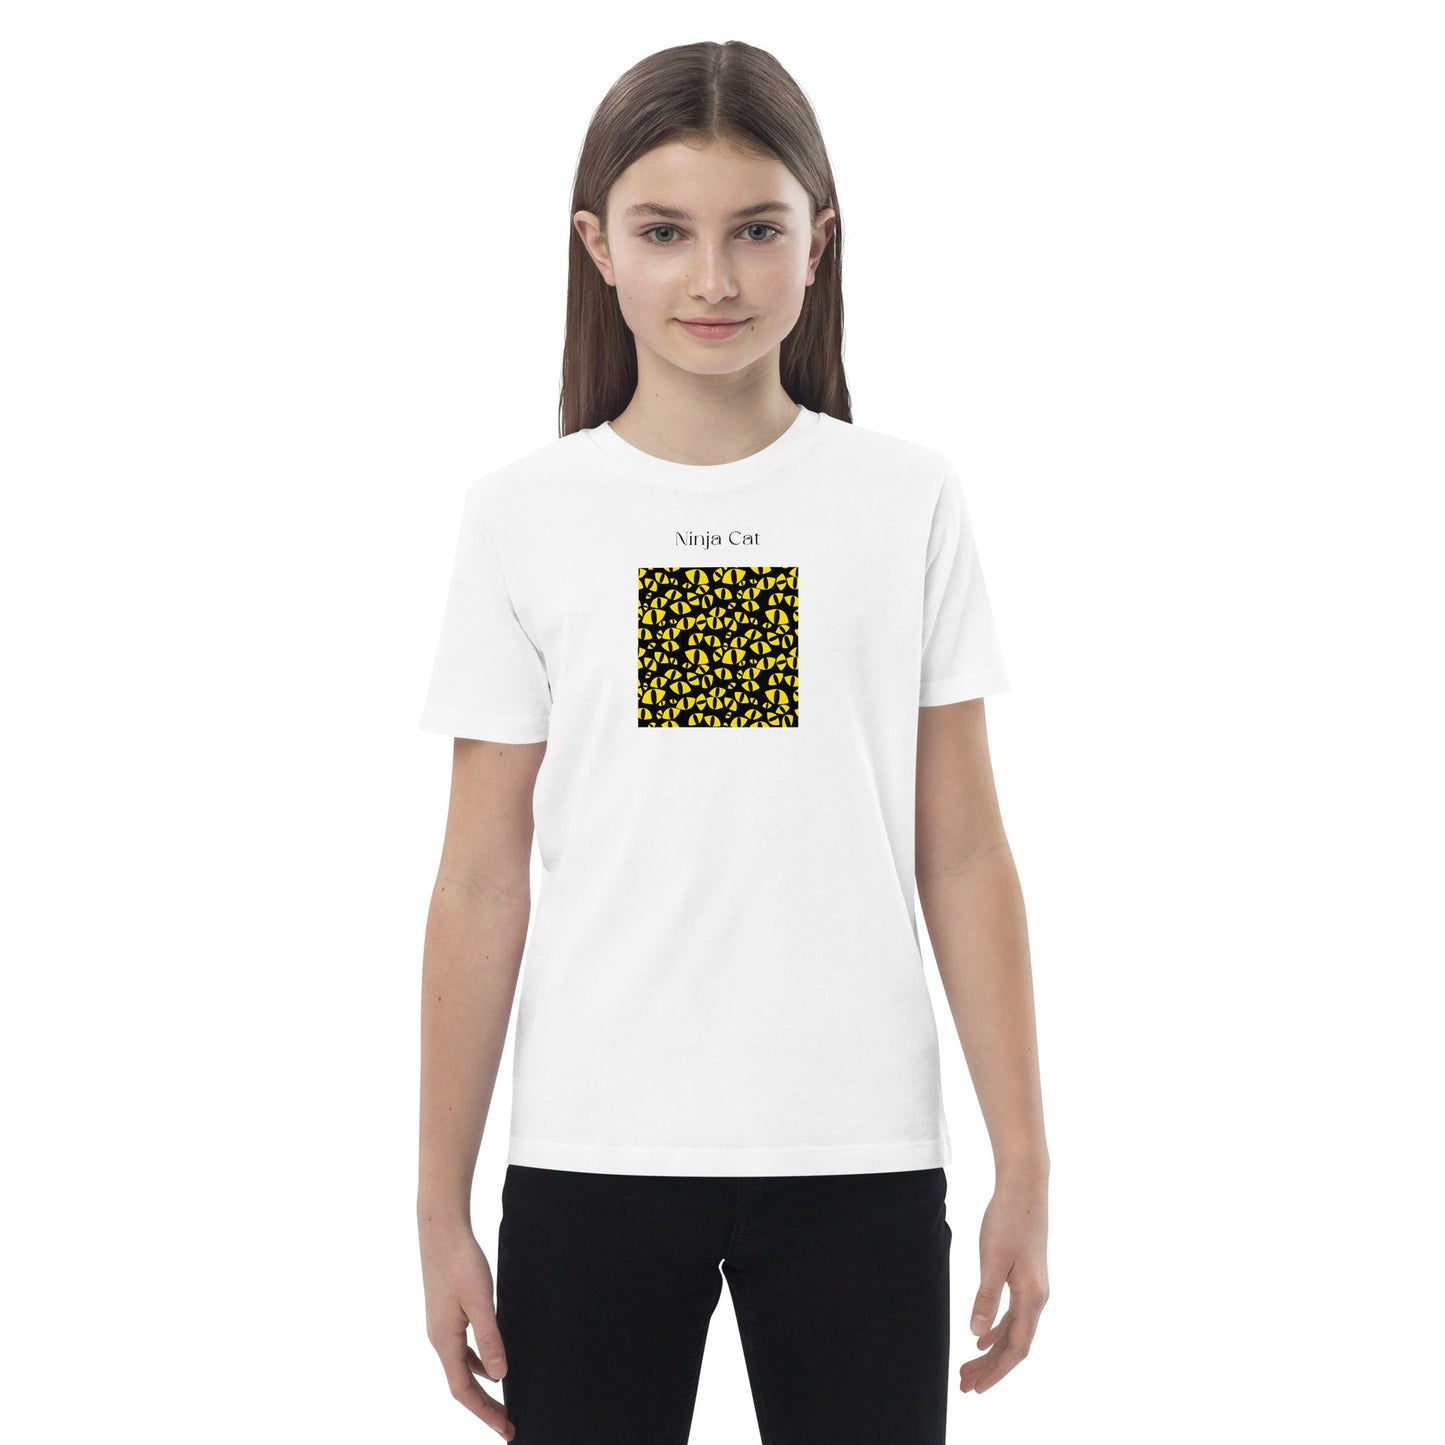 Organic Cotton 'Ninja Cat' Kids Funny Cat T-shirt - Funny Animal Shirt